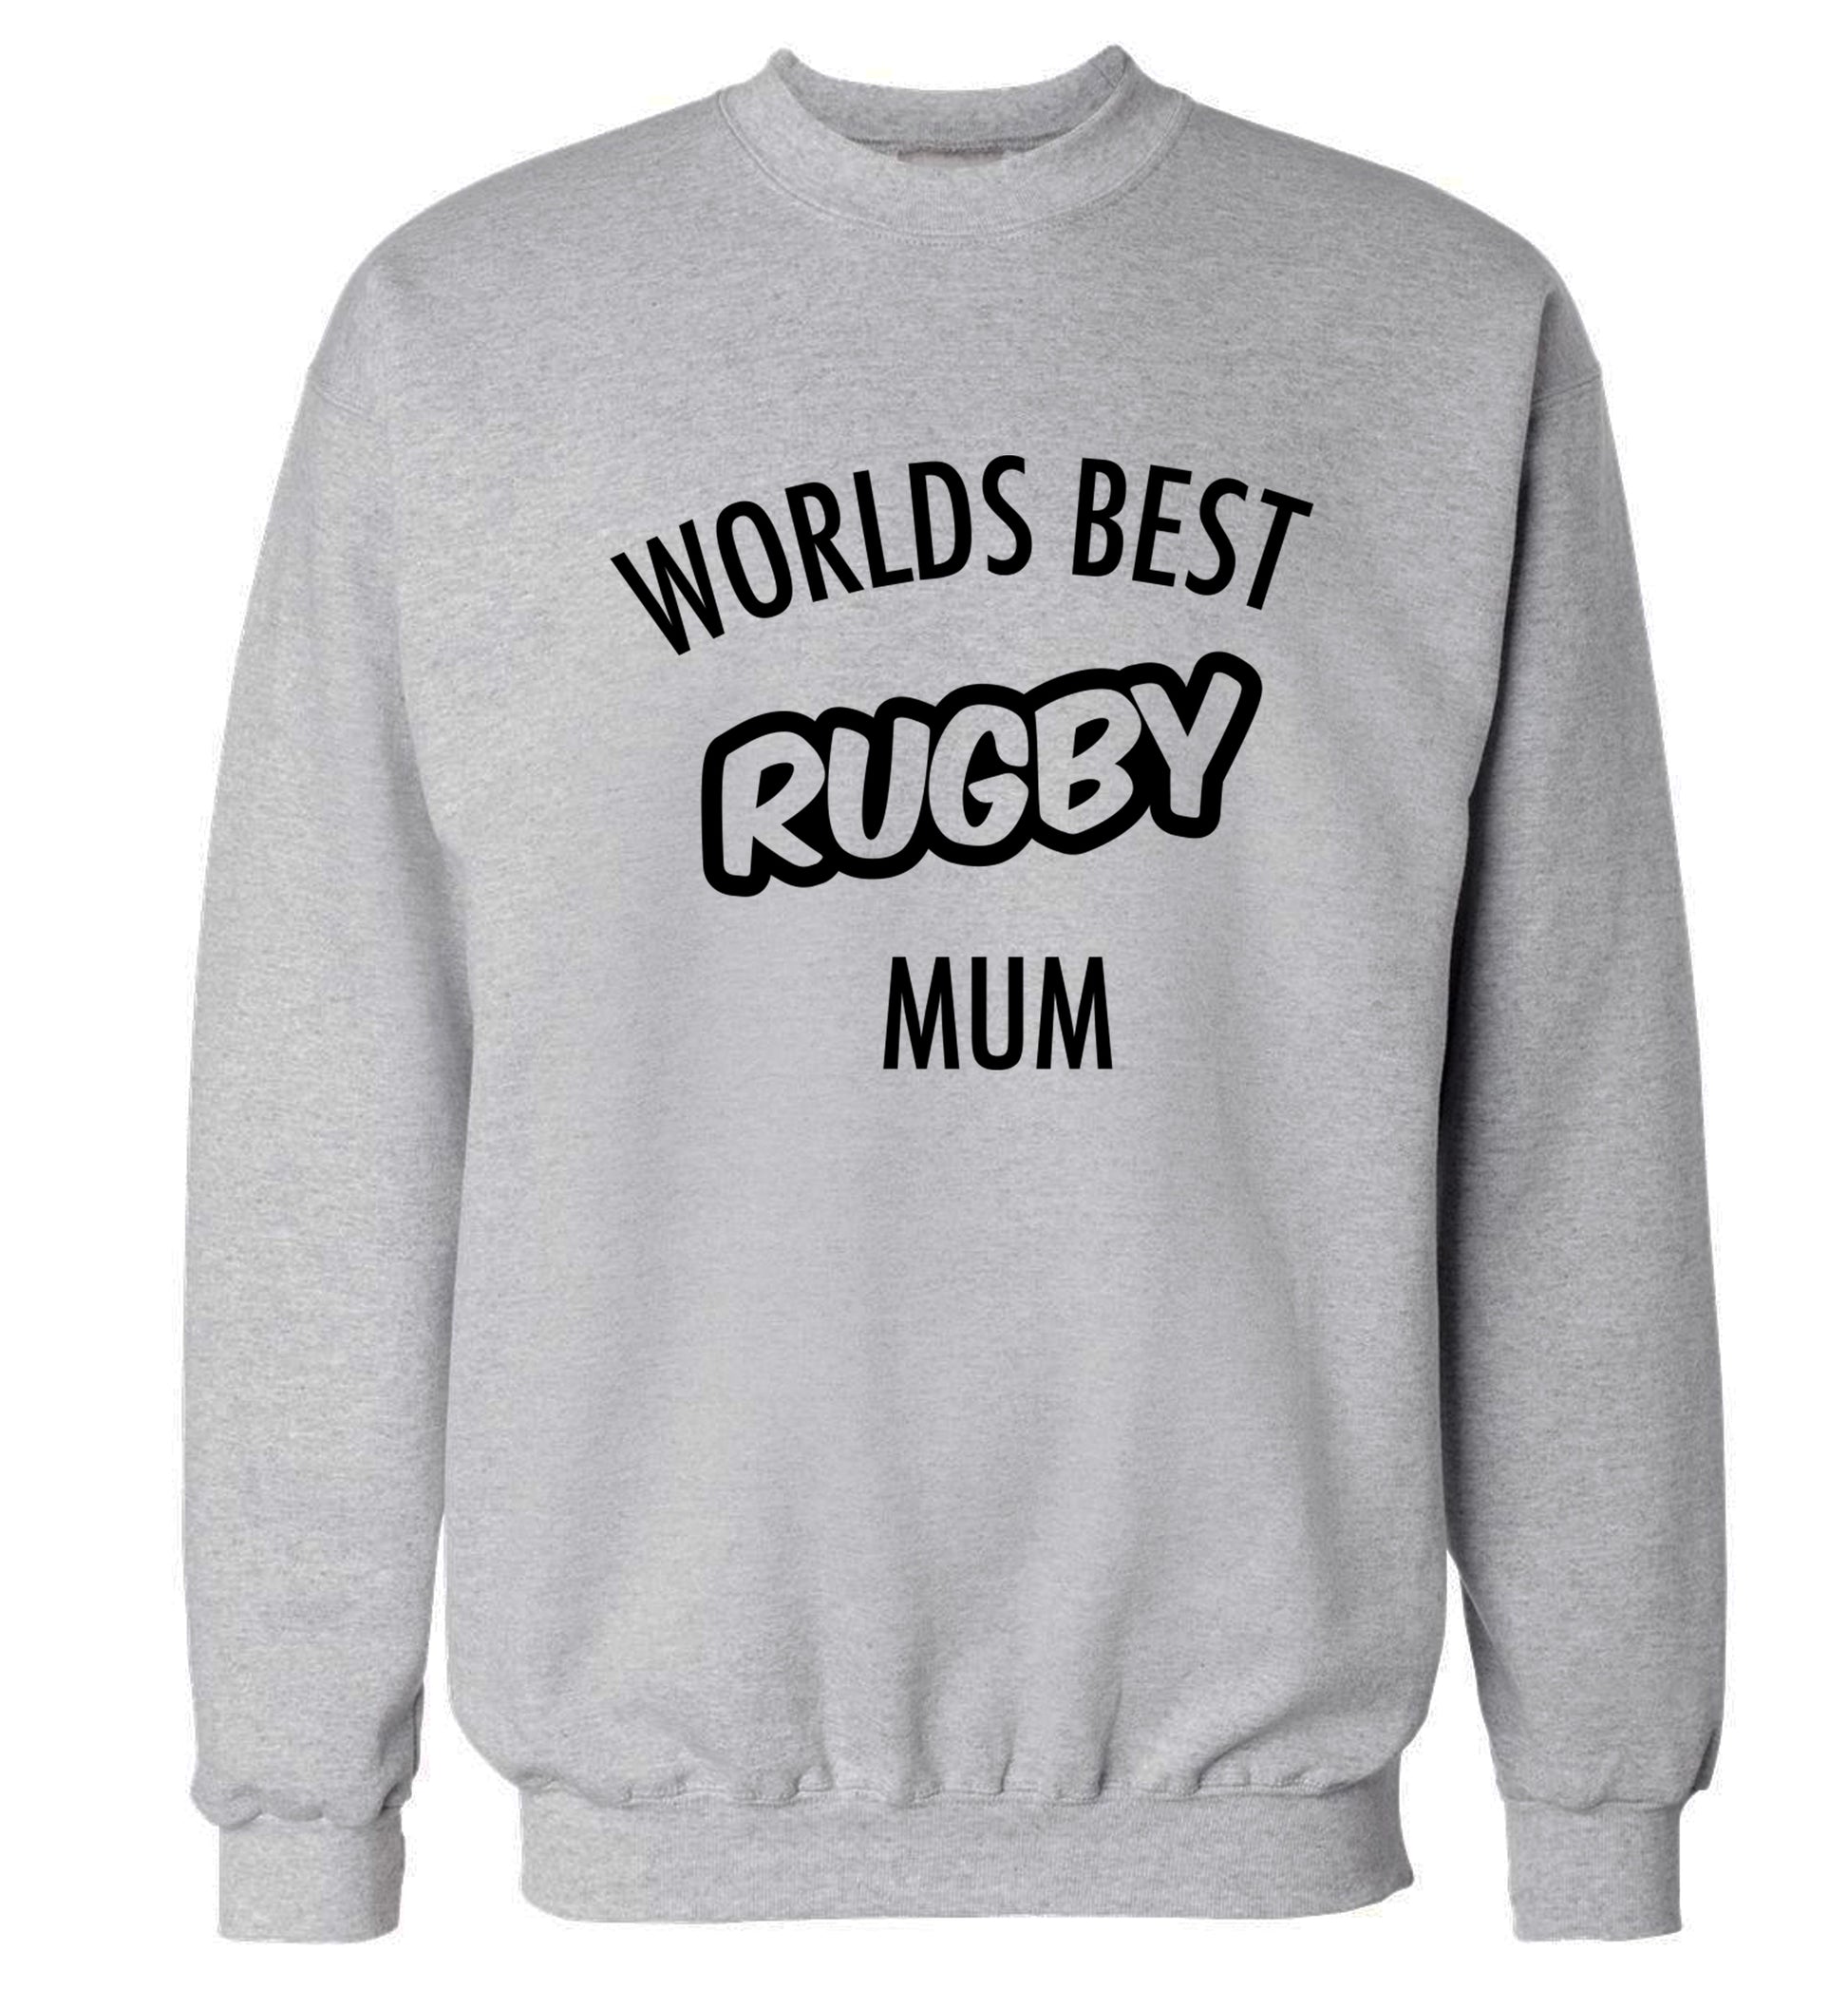 Worlds best rugby mum Adult's unisex grey Sweater 2XL